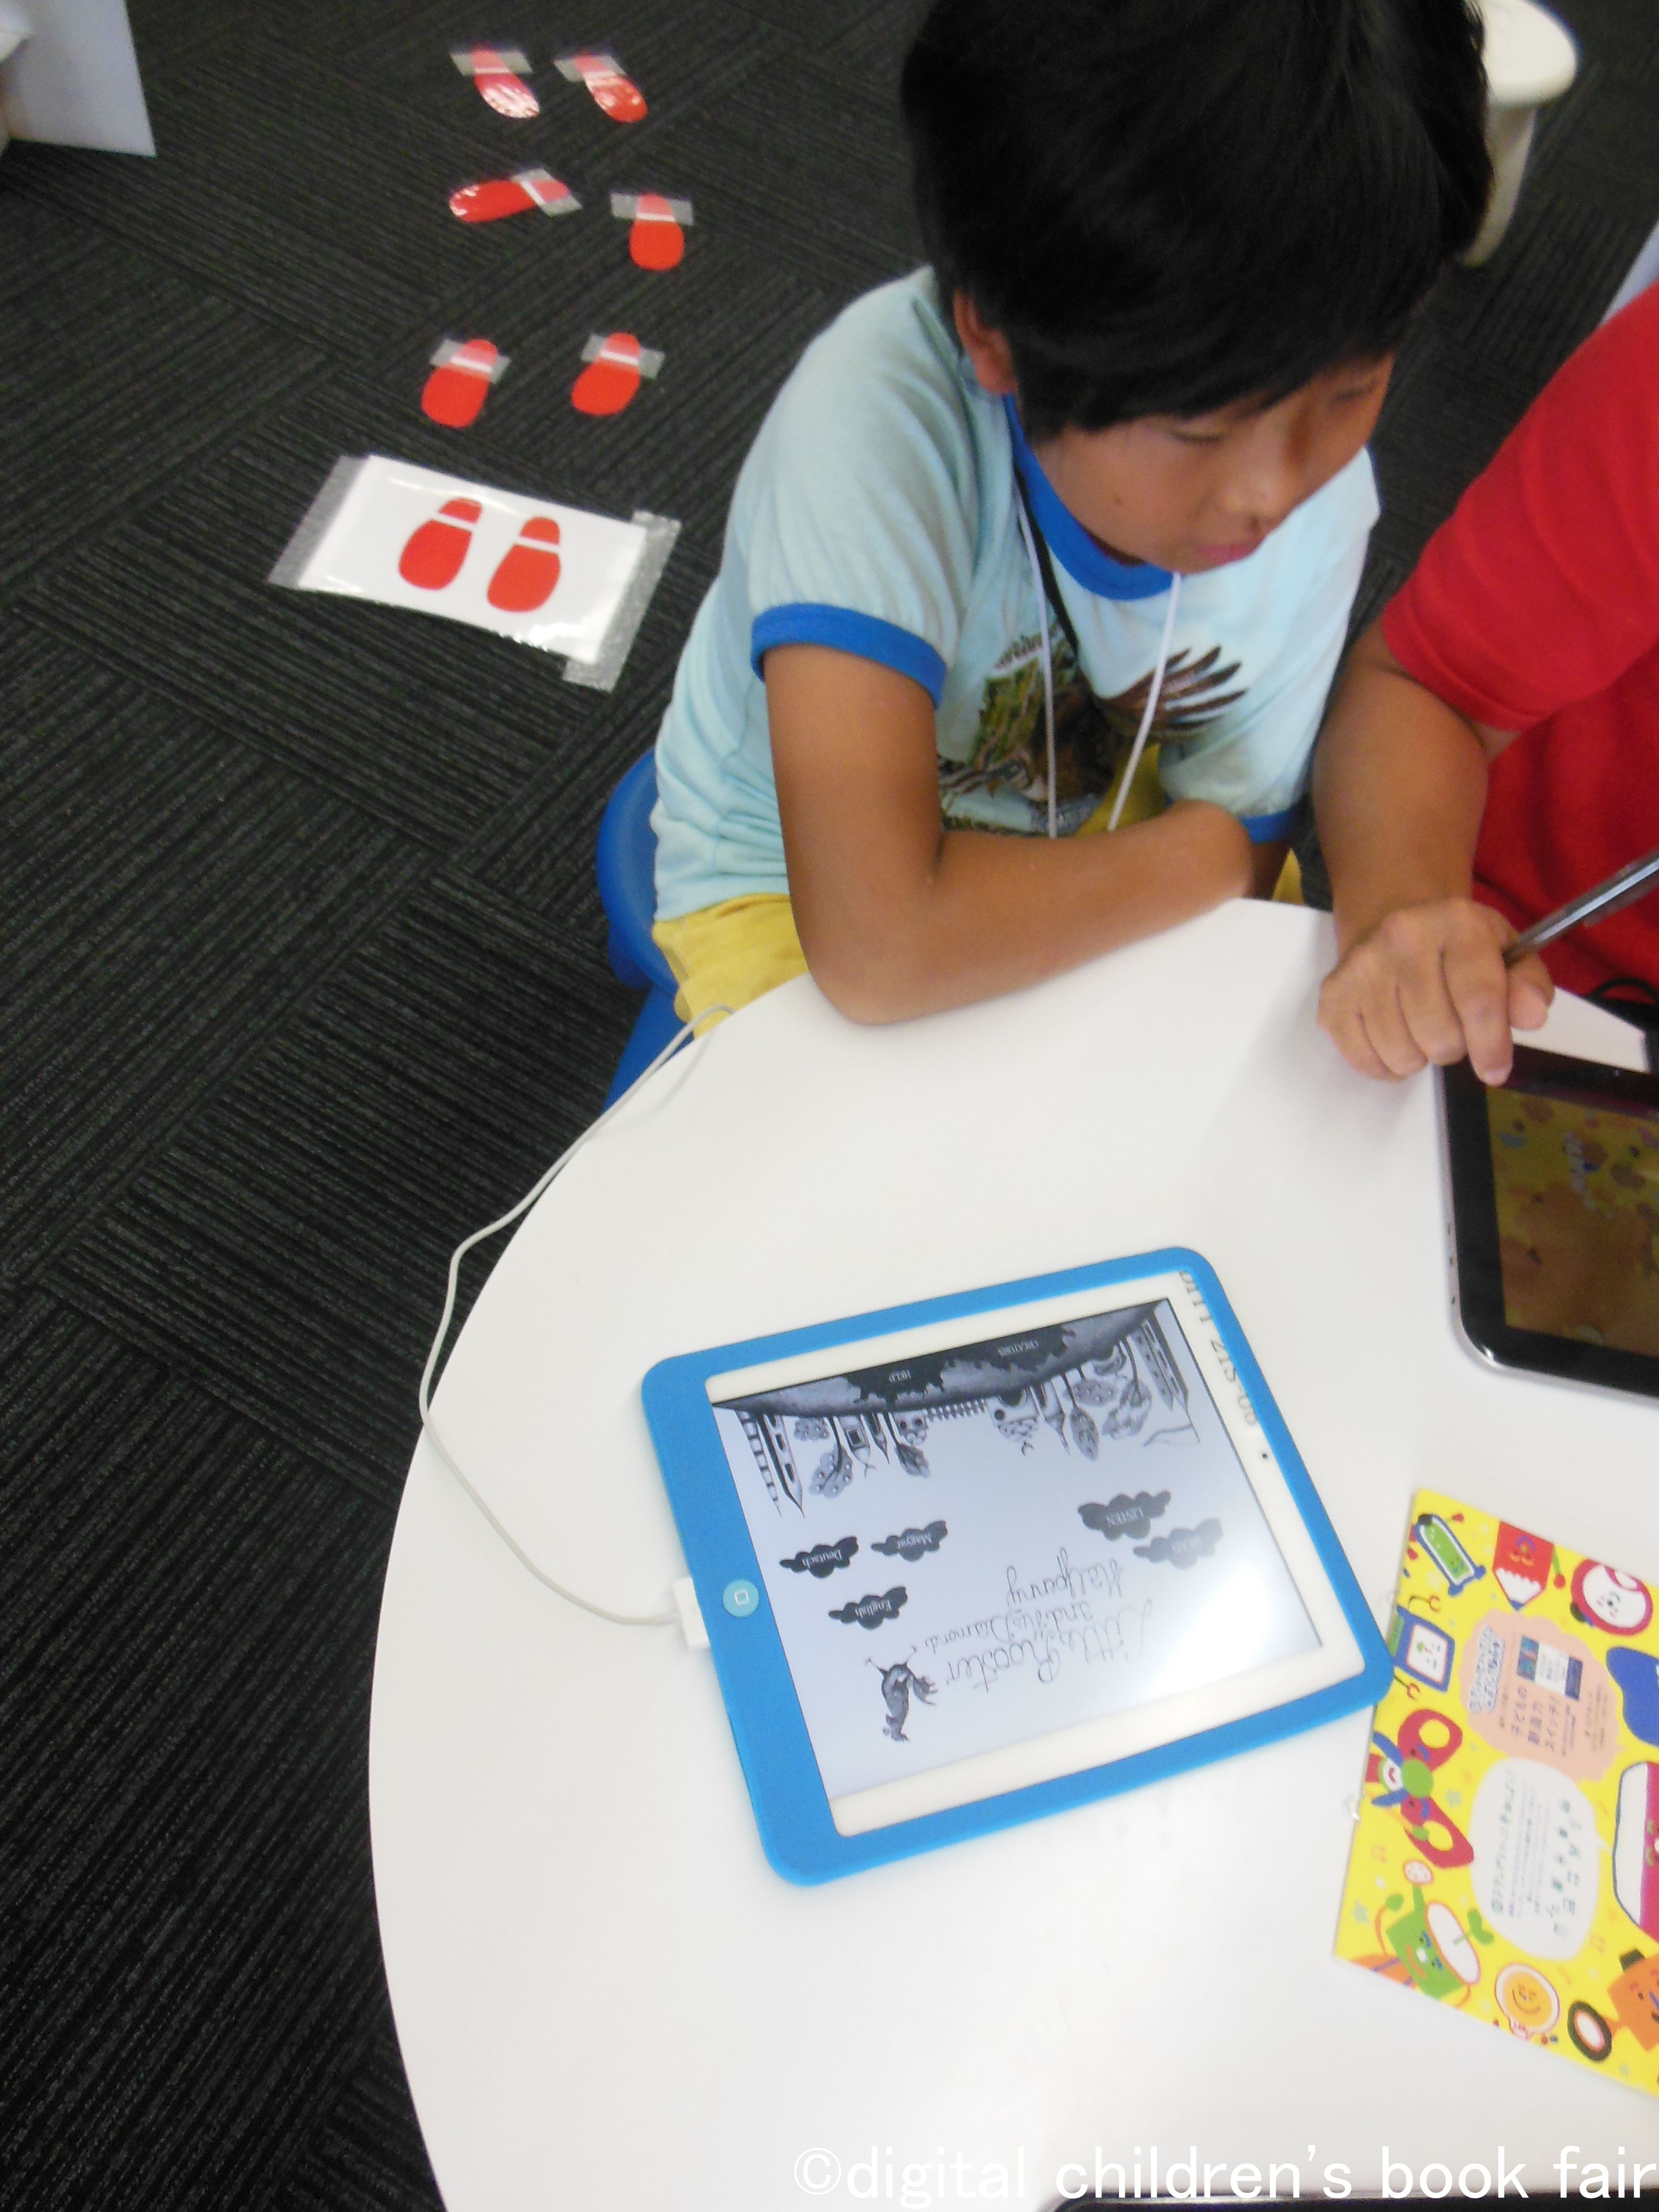 A kiskakas gyémánt félkrajcárja a japán Digital Children's Book Fairen!